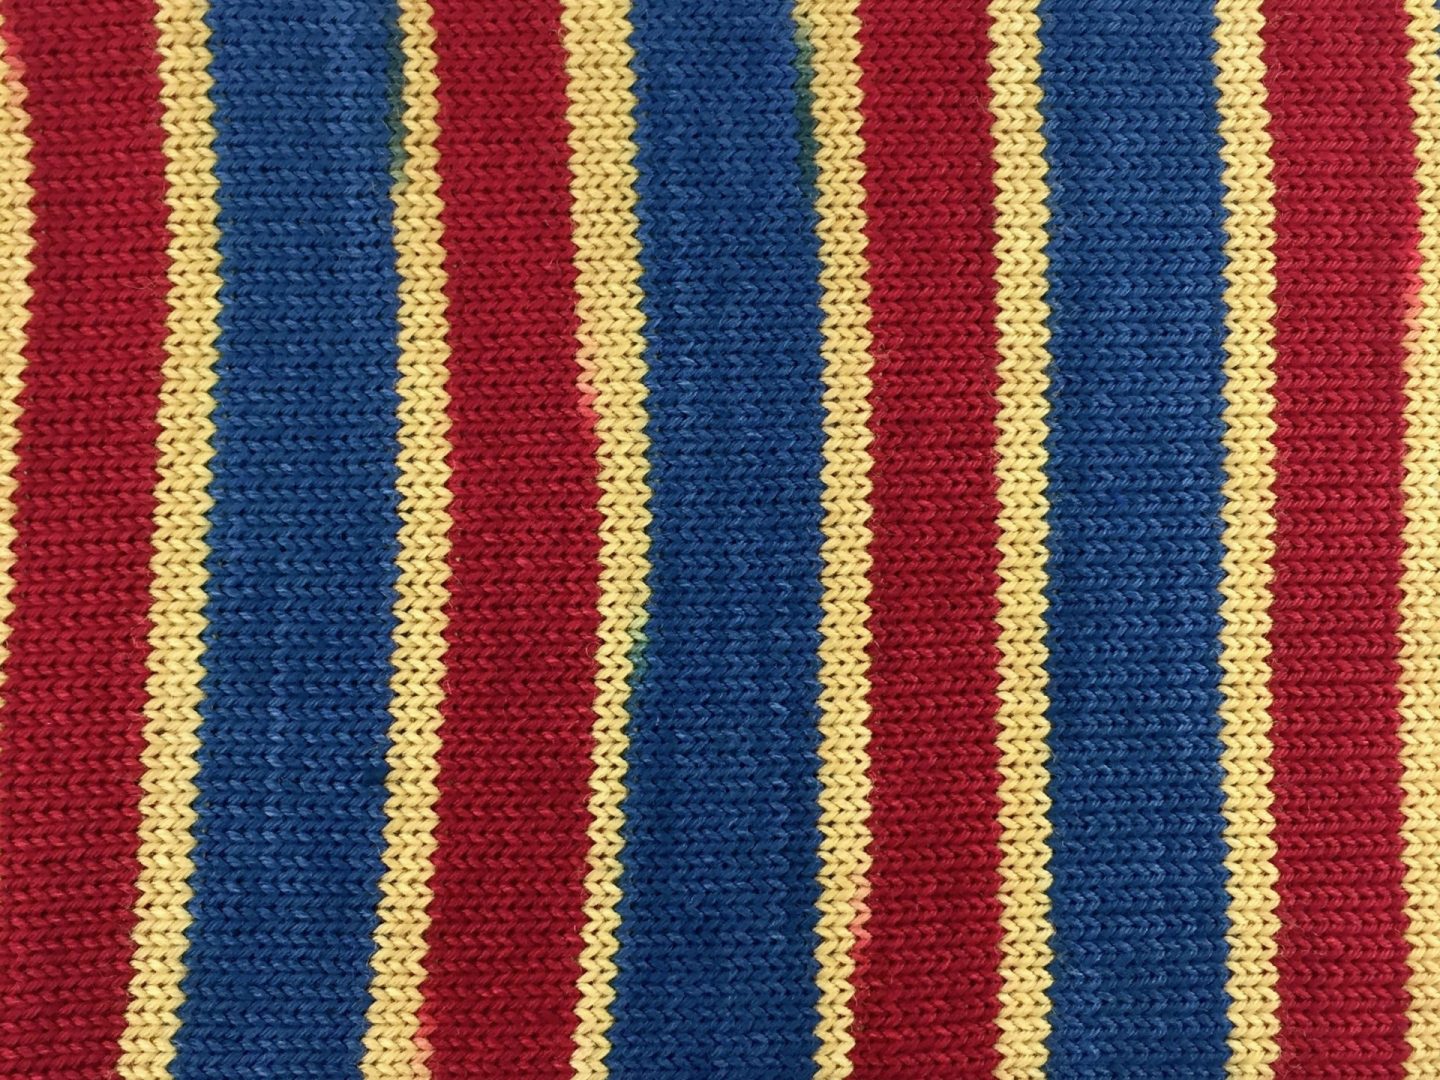 Old glory self-striping sock yarn